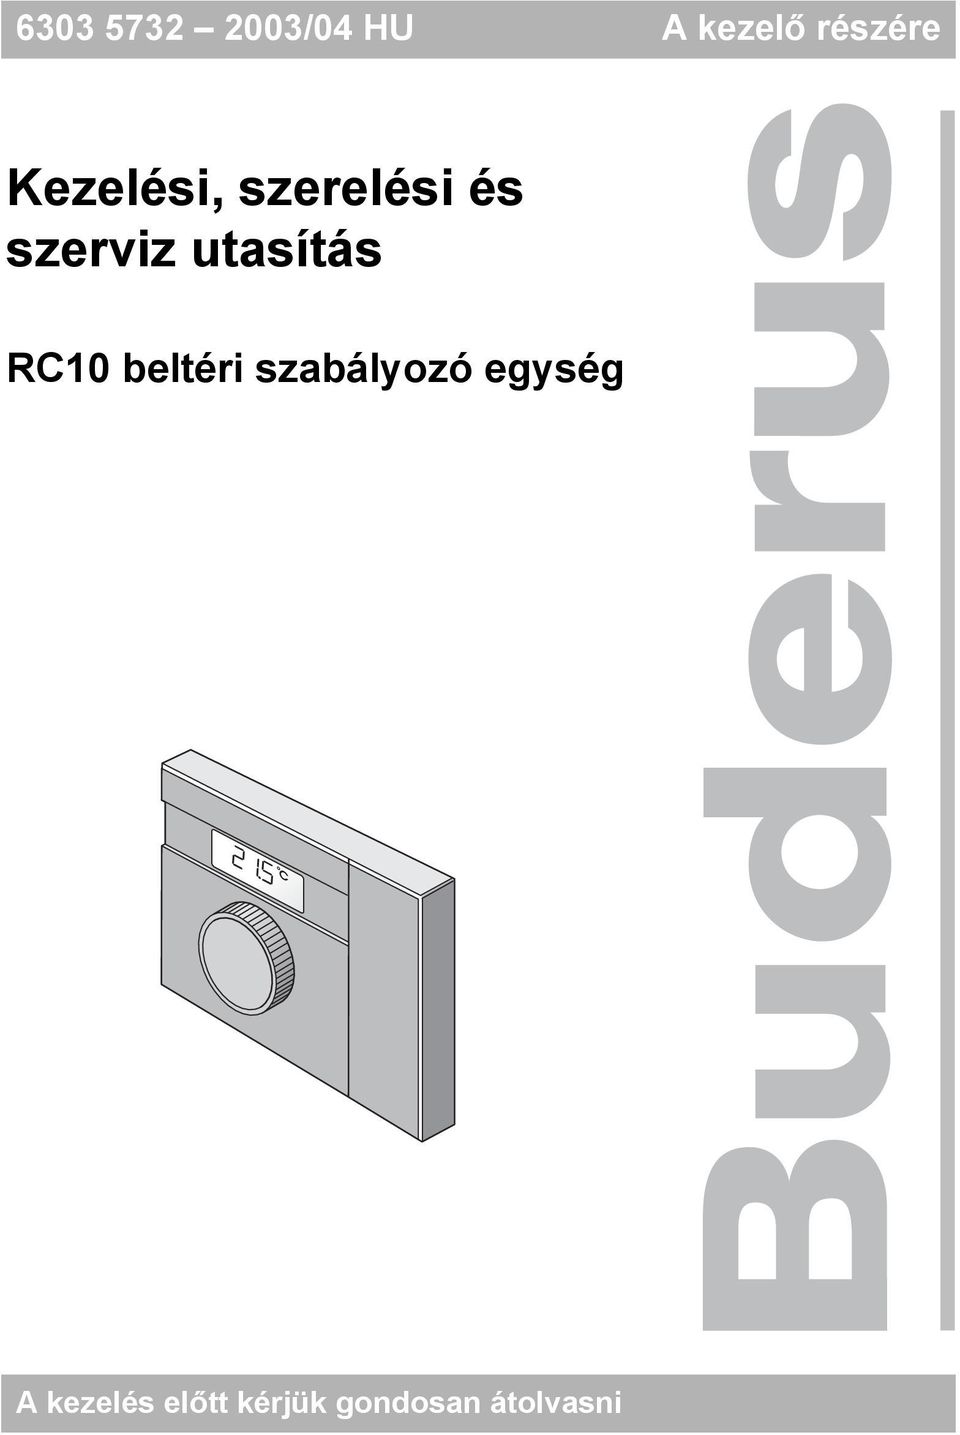 utasítás RC10 beltéri szabályozó